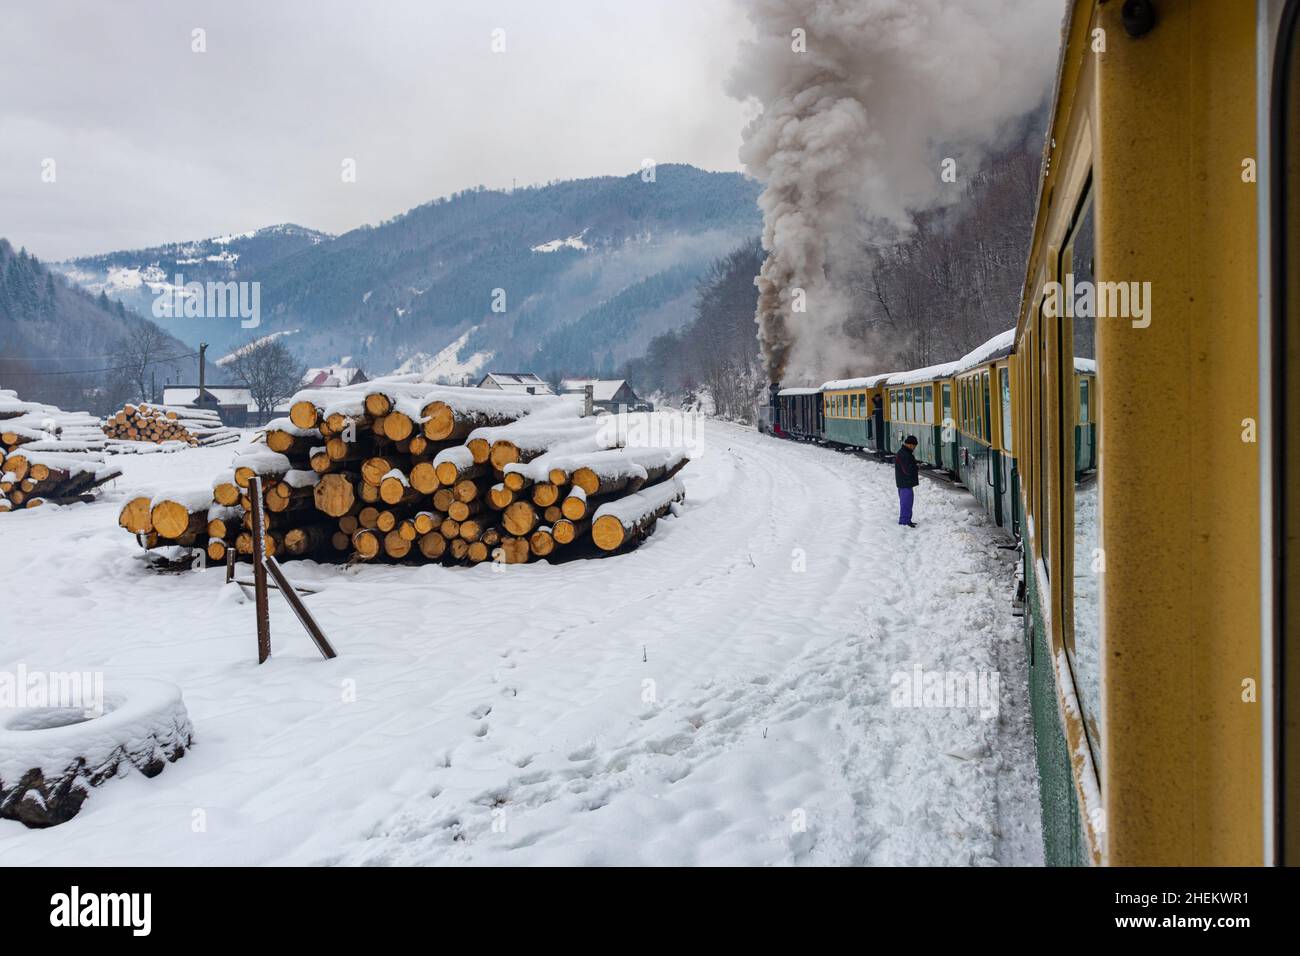 Foto de una locomotora de vapor de calibre estrecho, que cocer al vapor a través del paisaje invernal. La foto se tomó desde el tren mientras se estaba moviendo. Fotografía de un touristi Foto de stock